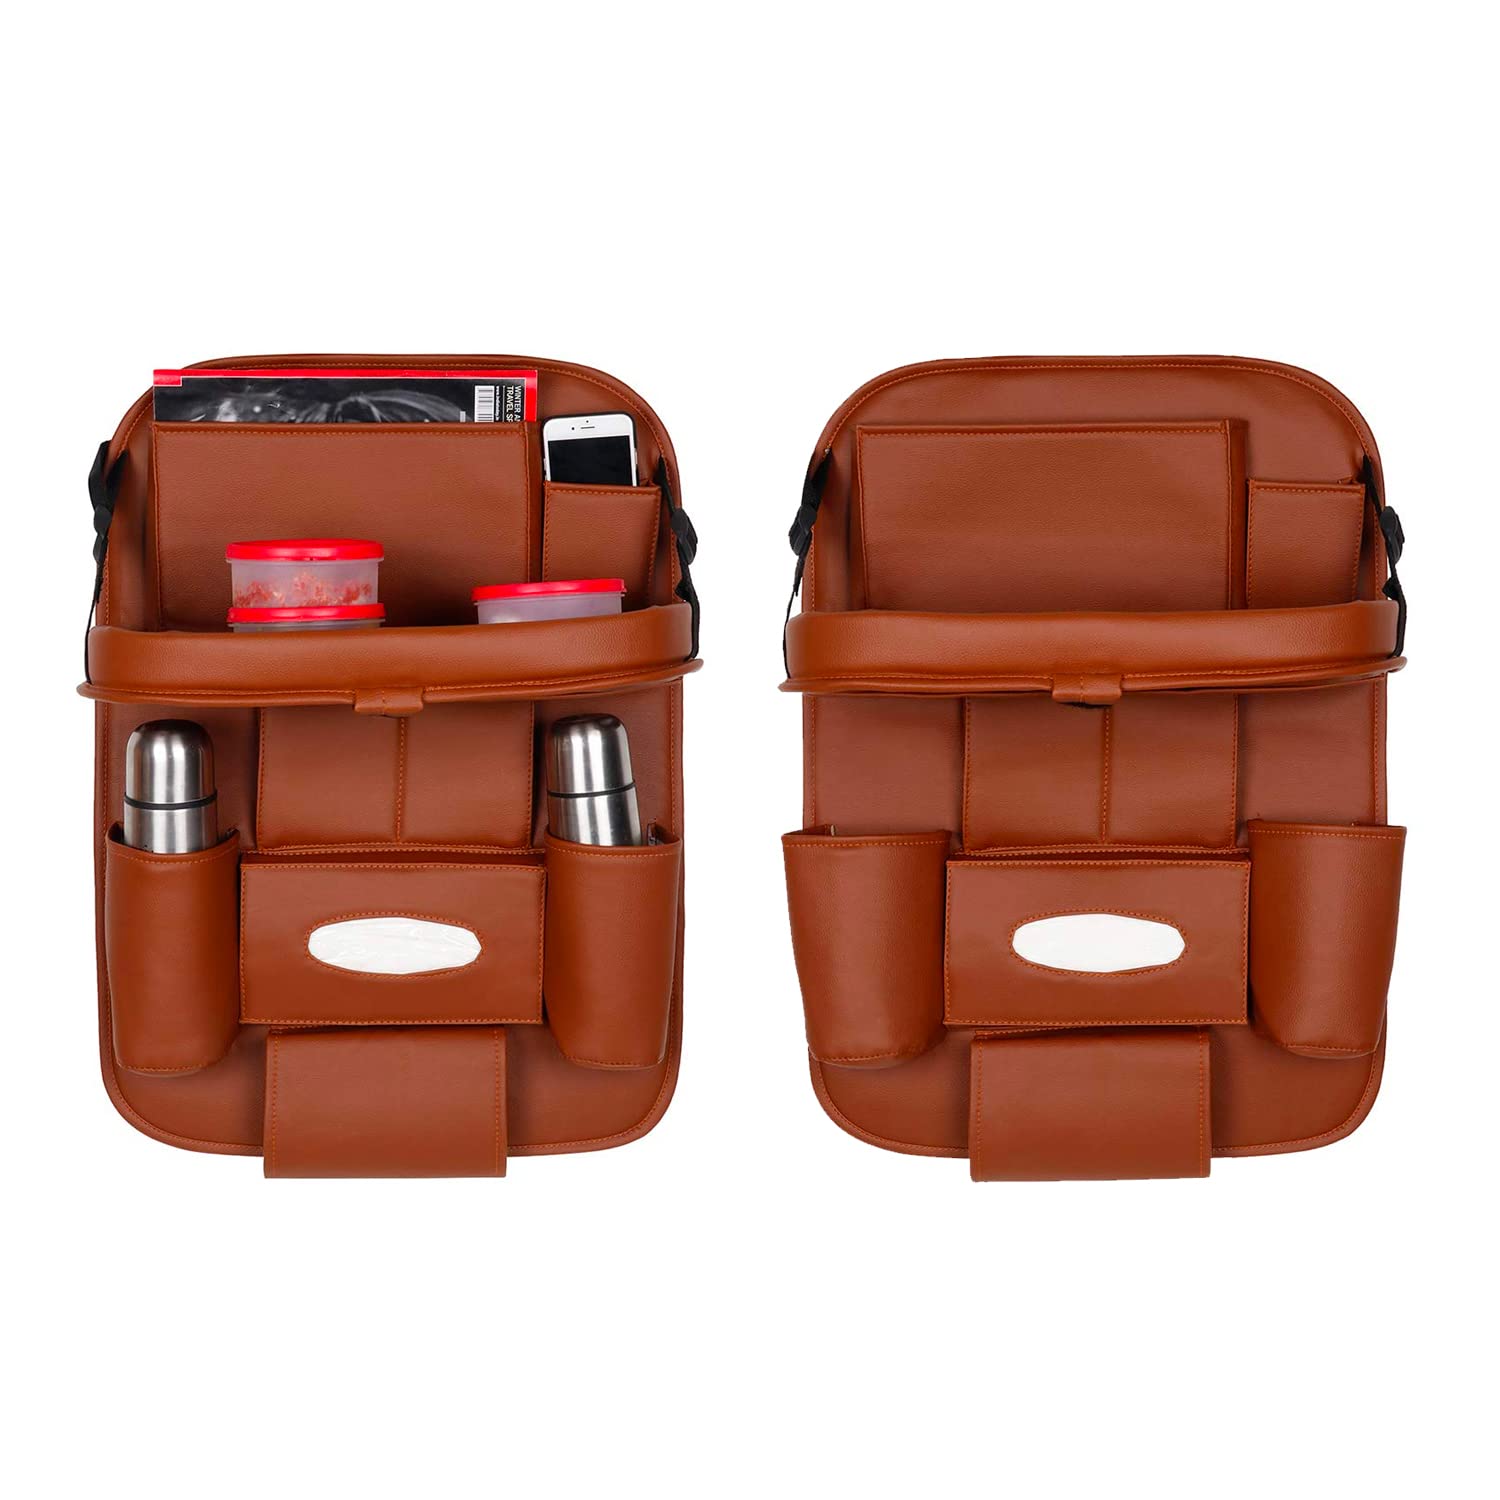 JOYROOM Car Storage Bag with 7 Bags, Car Back Seat Pocket Bag,Multifunctional  Chair Back Debris Hanging Bags price in UAE,  UAE